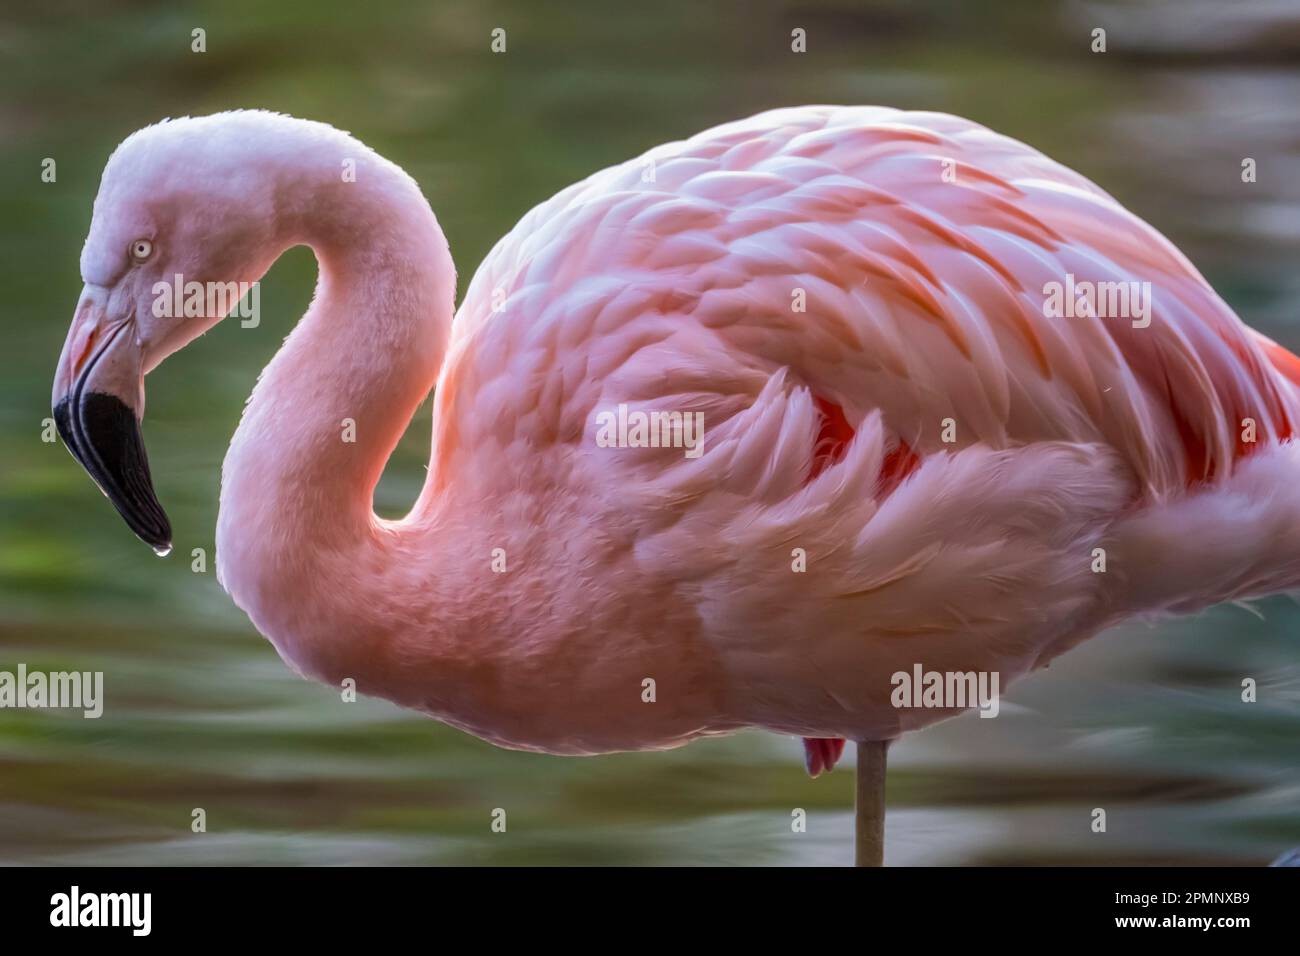 Nahaufnahme eines rosa Flamingos (Phoenicopteridae), der auf einem Bein steht; Maui, Hawaii, Vereinigte Staaten von Amerika Stockfoto